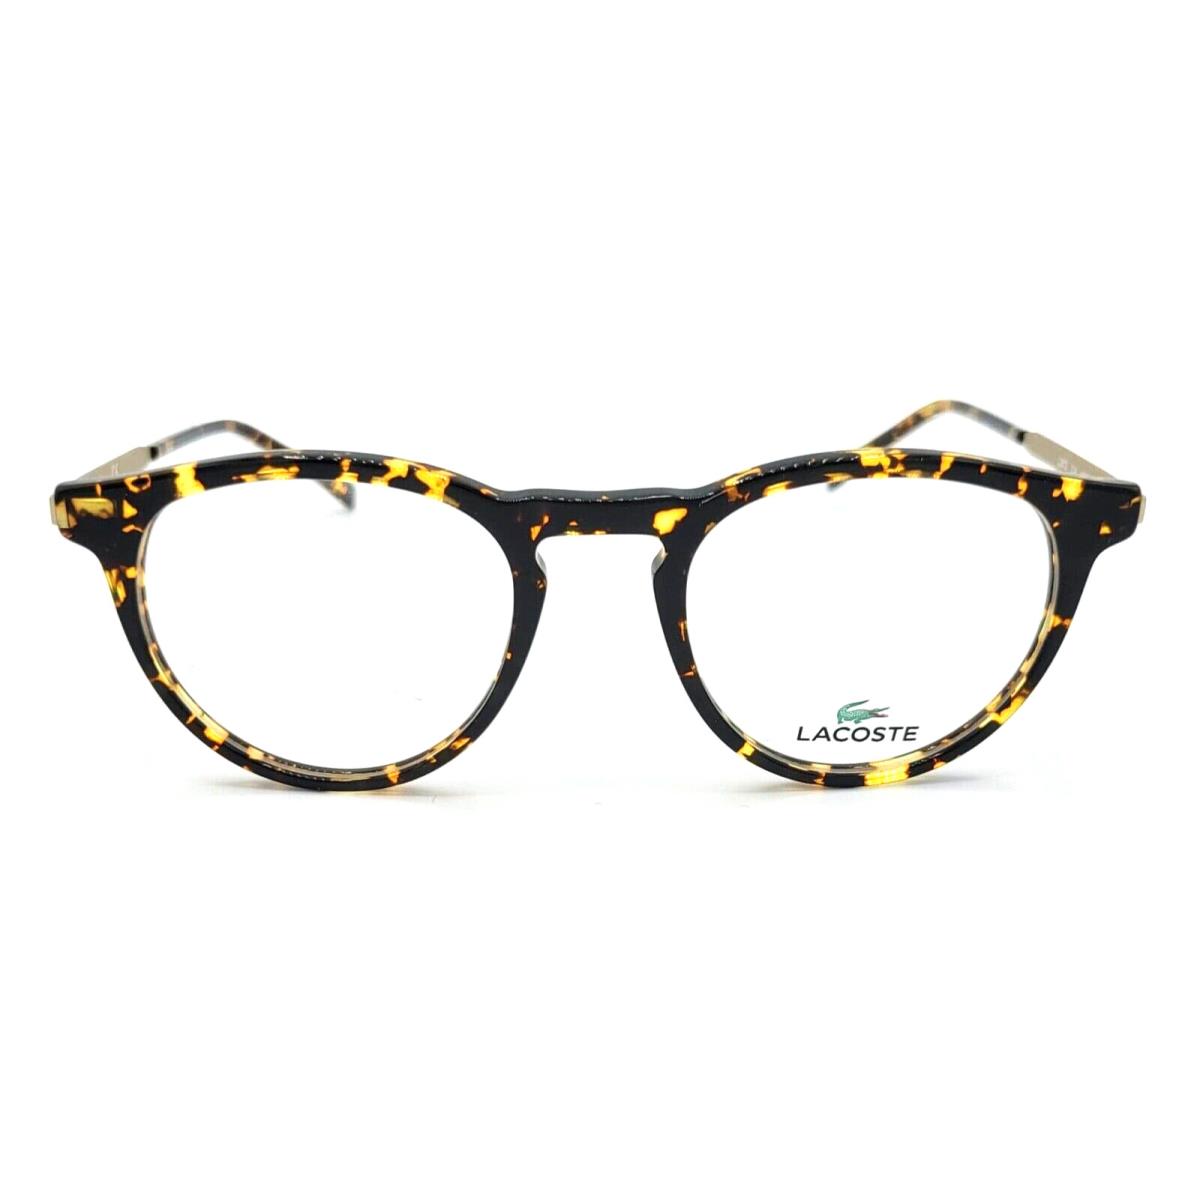 Lacoste - L2872 214 49/20/145 - Tortoise - Men Eyeglasses